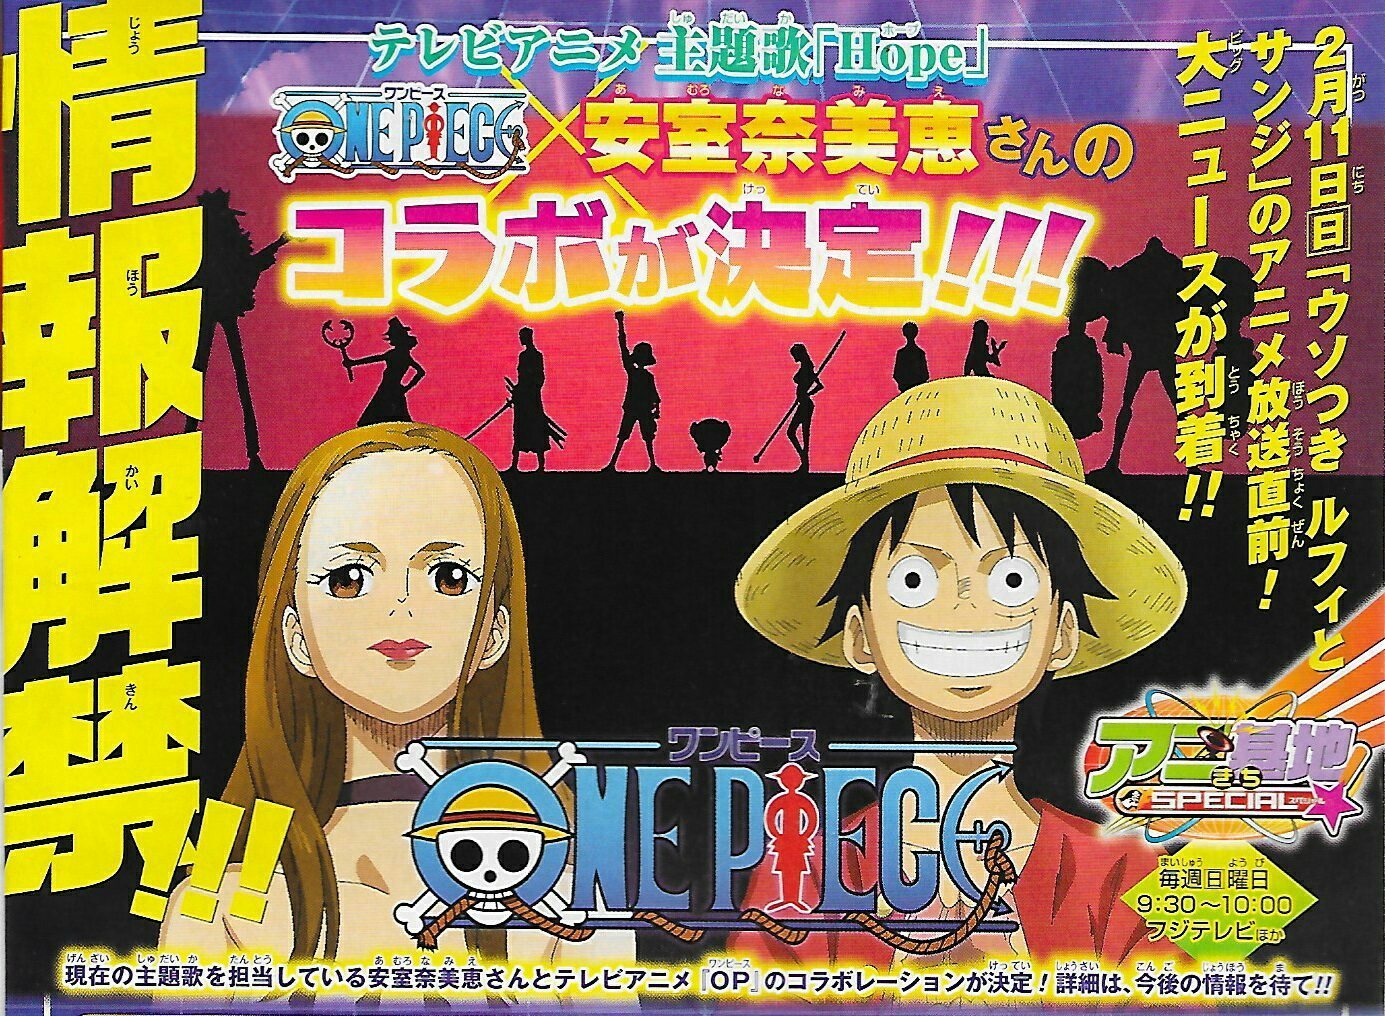 アムロちゃんがアニメ化 安室奈美恵 One Piece 主題歌hopeで共演 アイルの日記